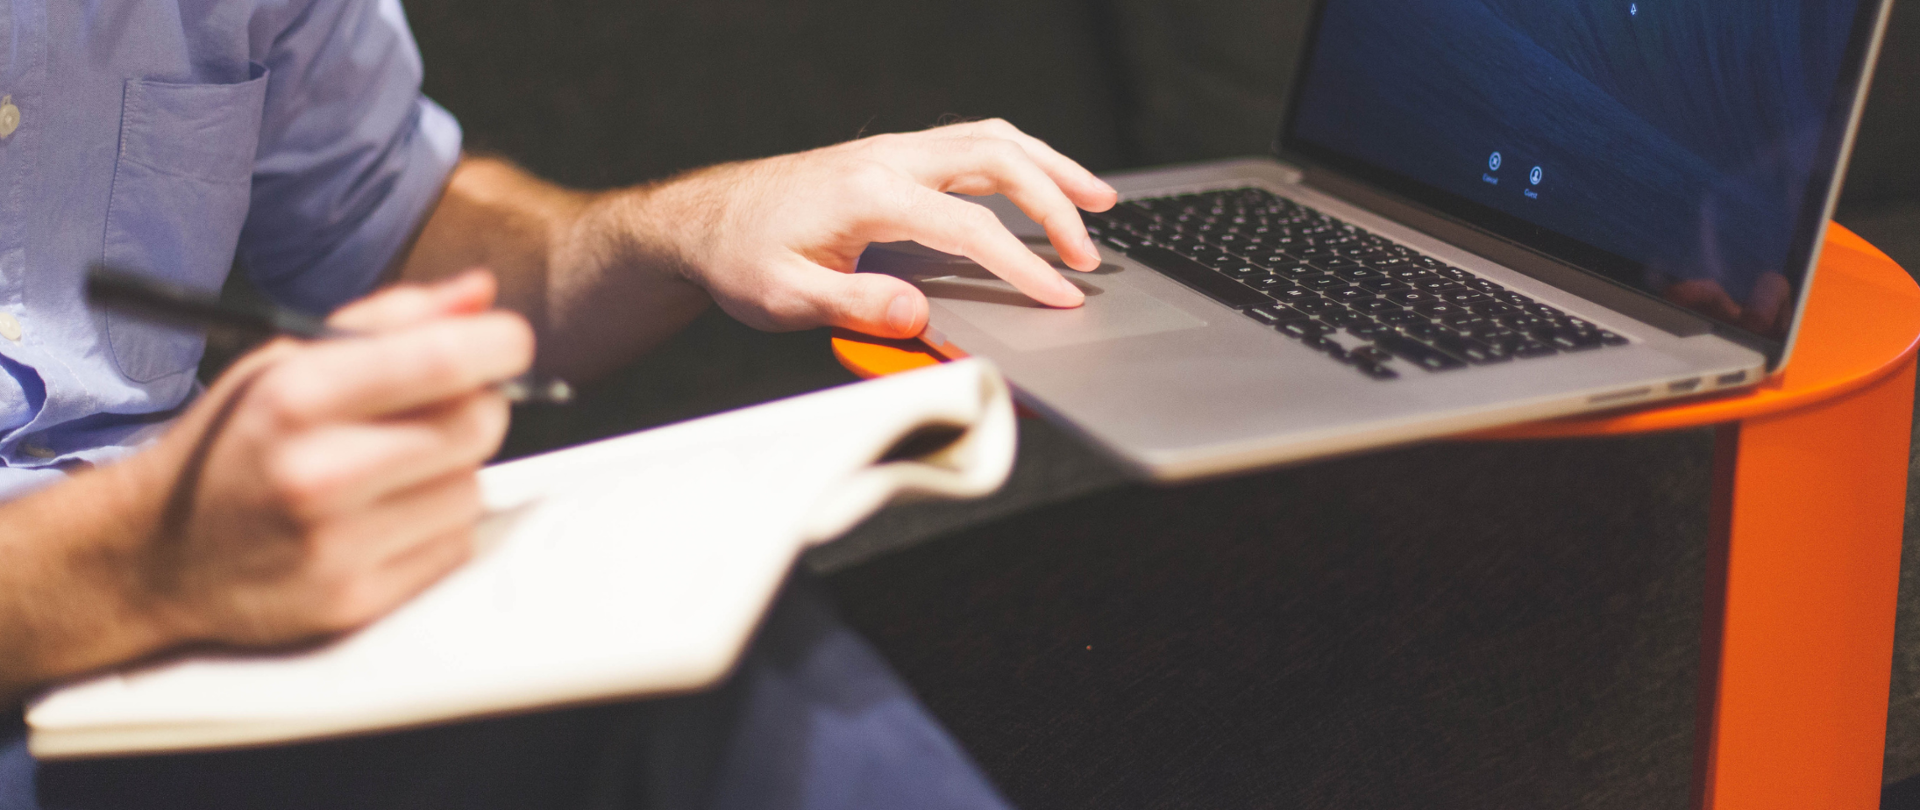 Siedzący mężczyzna w niebieskiej koszuli, ujęcie od połowy ramienia. Na kolanie trzyma notatnik, opiera o niego prawą dłoń z długopisem. Lewą dłoń trzyma na touchpadzie laptopa, który stoi na pomarańczowym stoliku. 